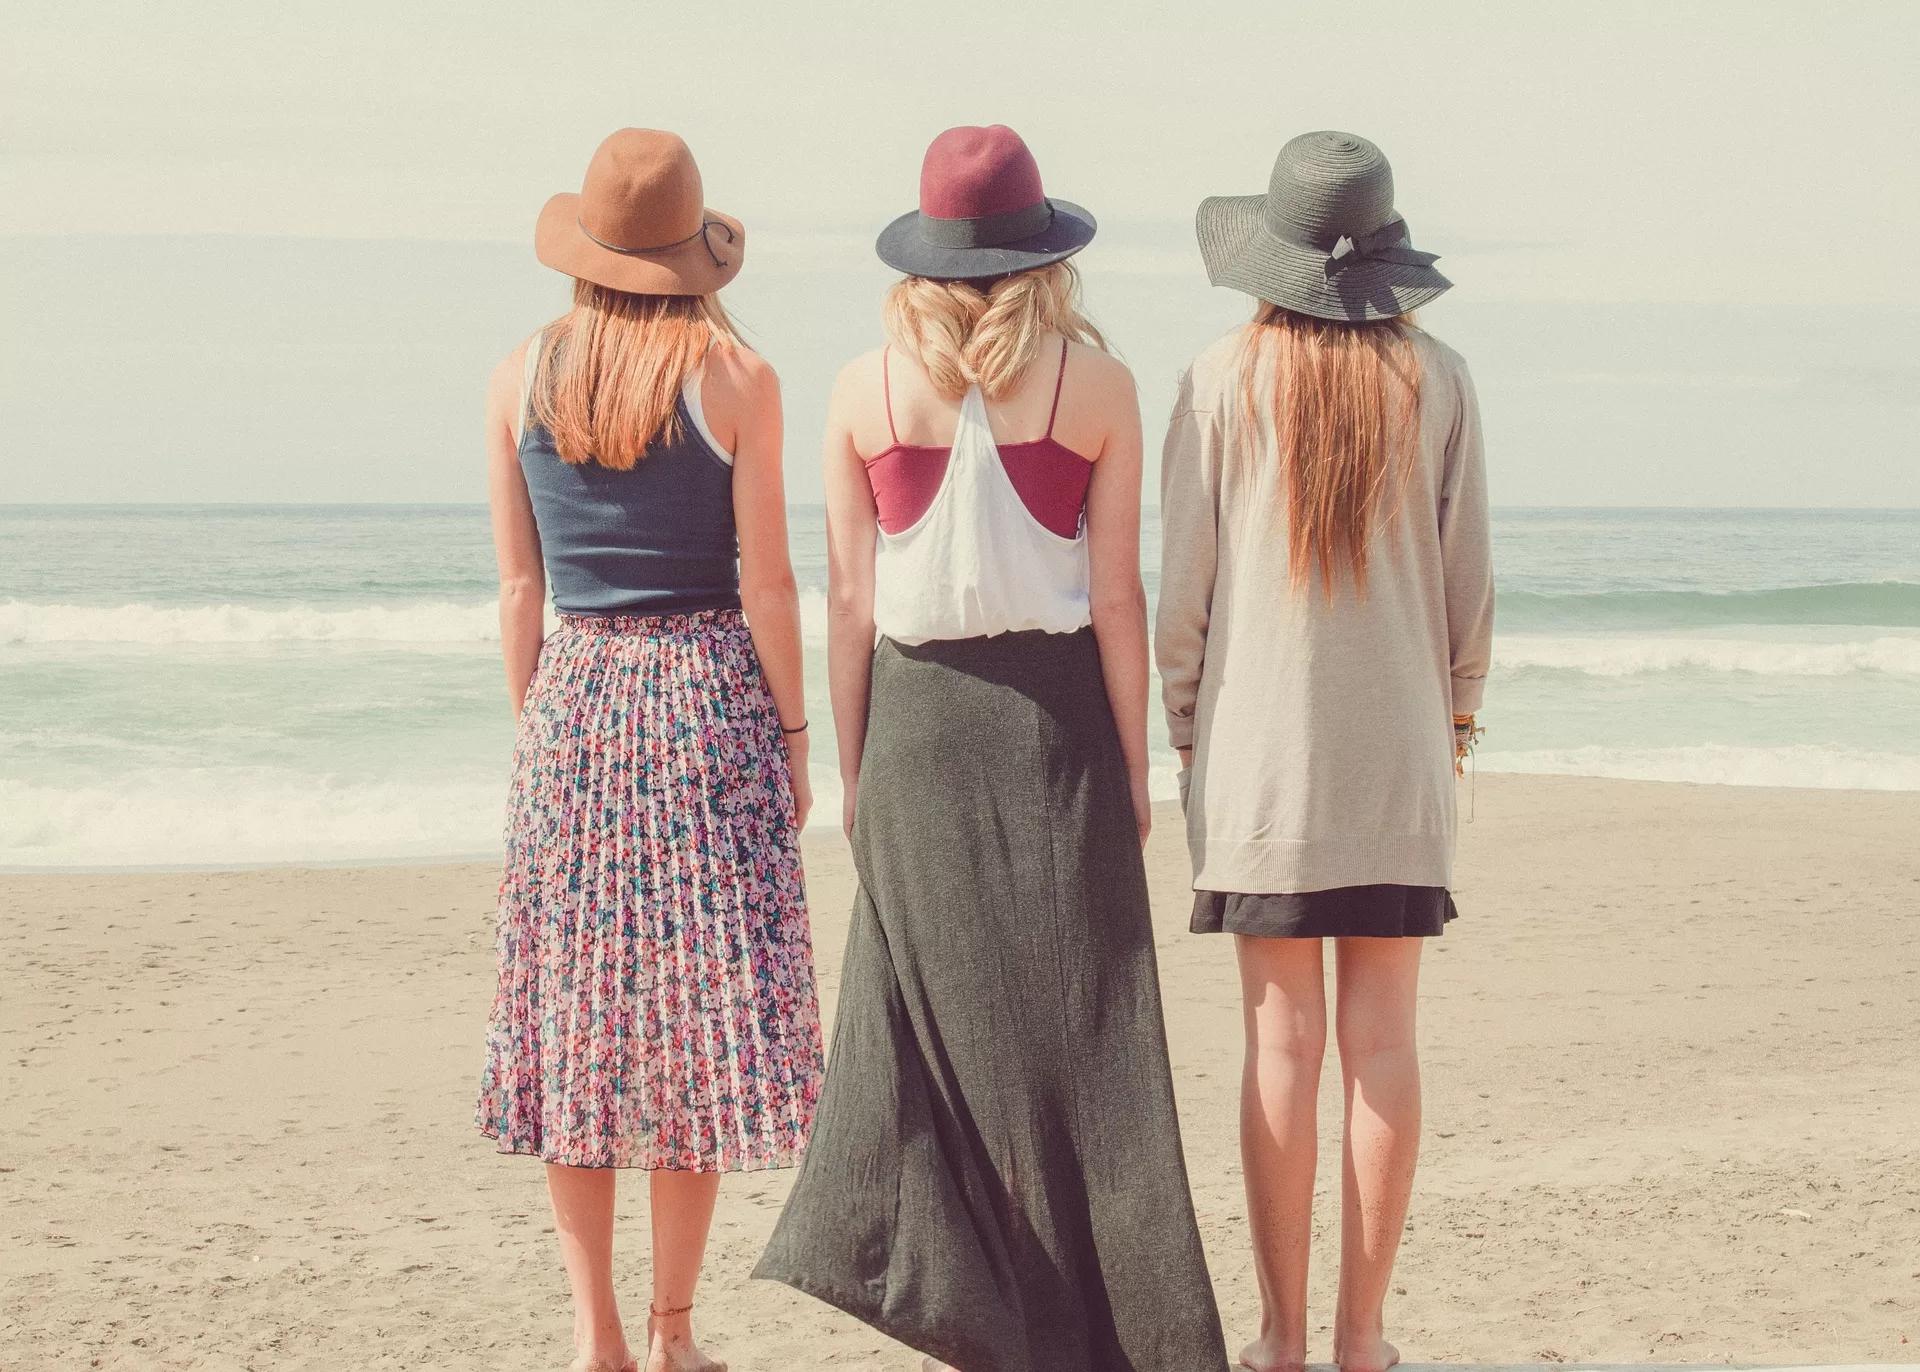 Potret tiga orang wanita yang sedang berdiri tegap di sebuah pantai, ilustrasi cara memperbaiki postur tubuh bungkuk.